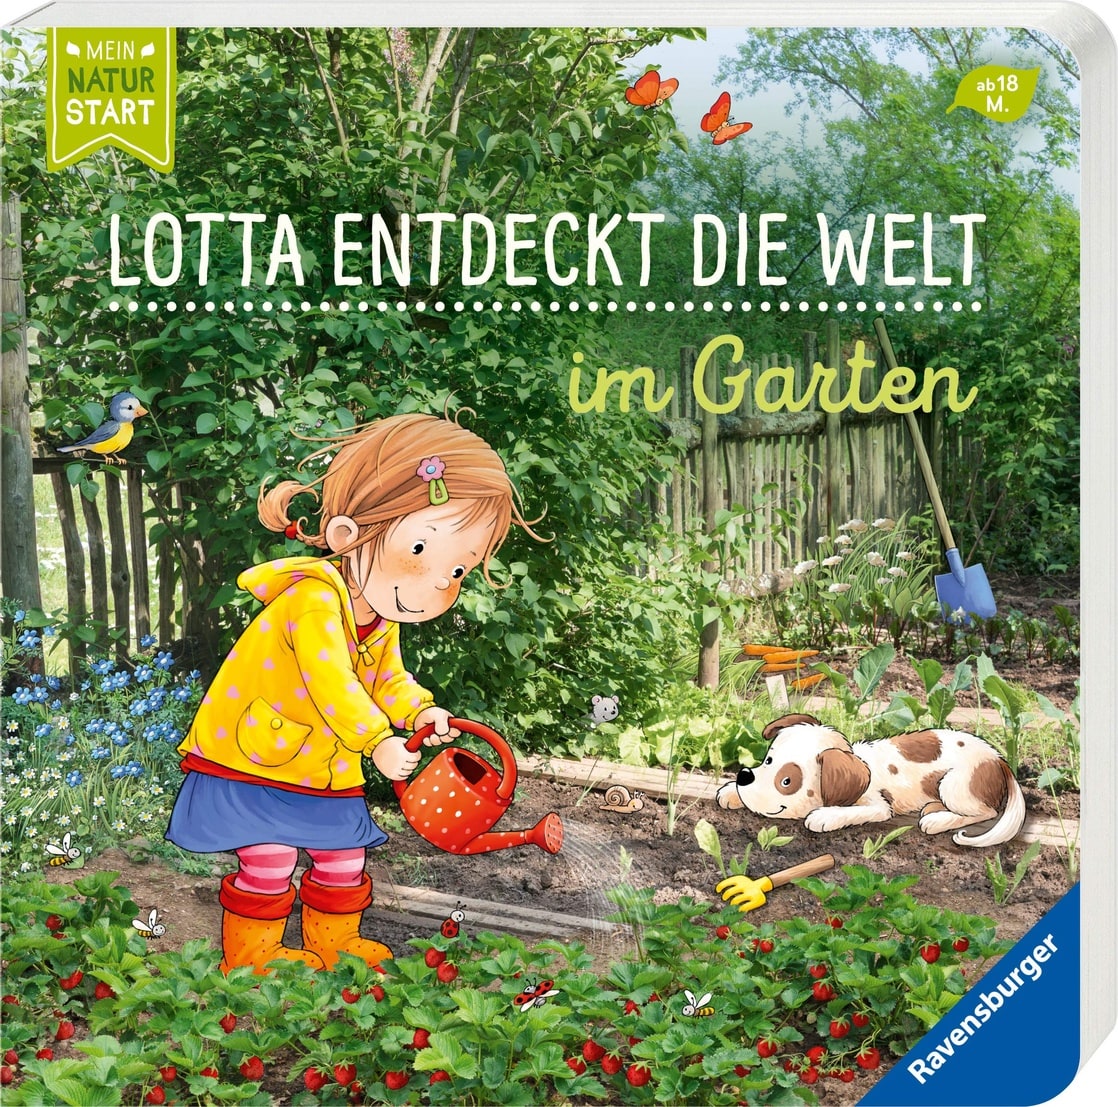 Lotta entdeckt die Welt: Im Garten